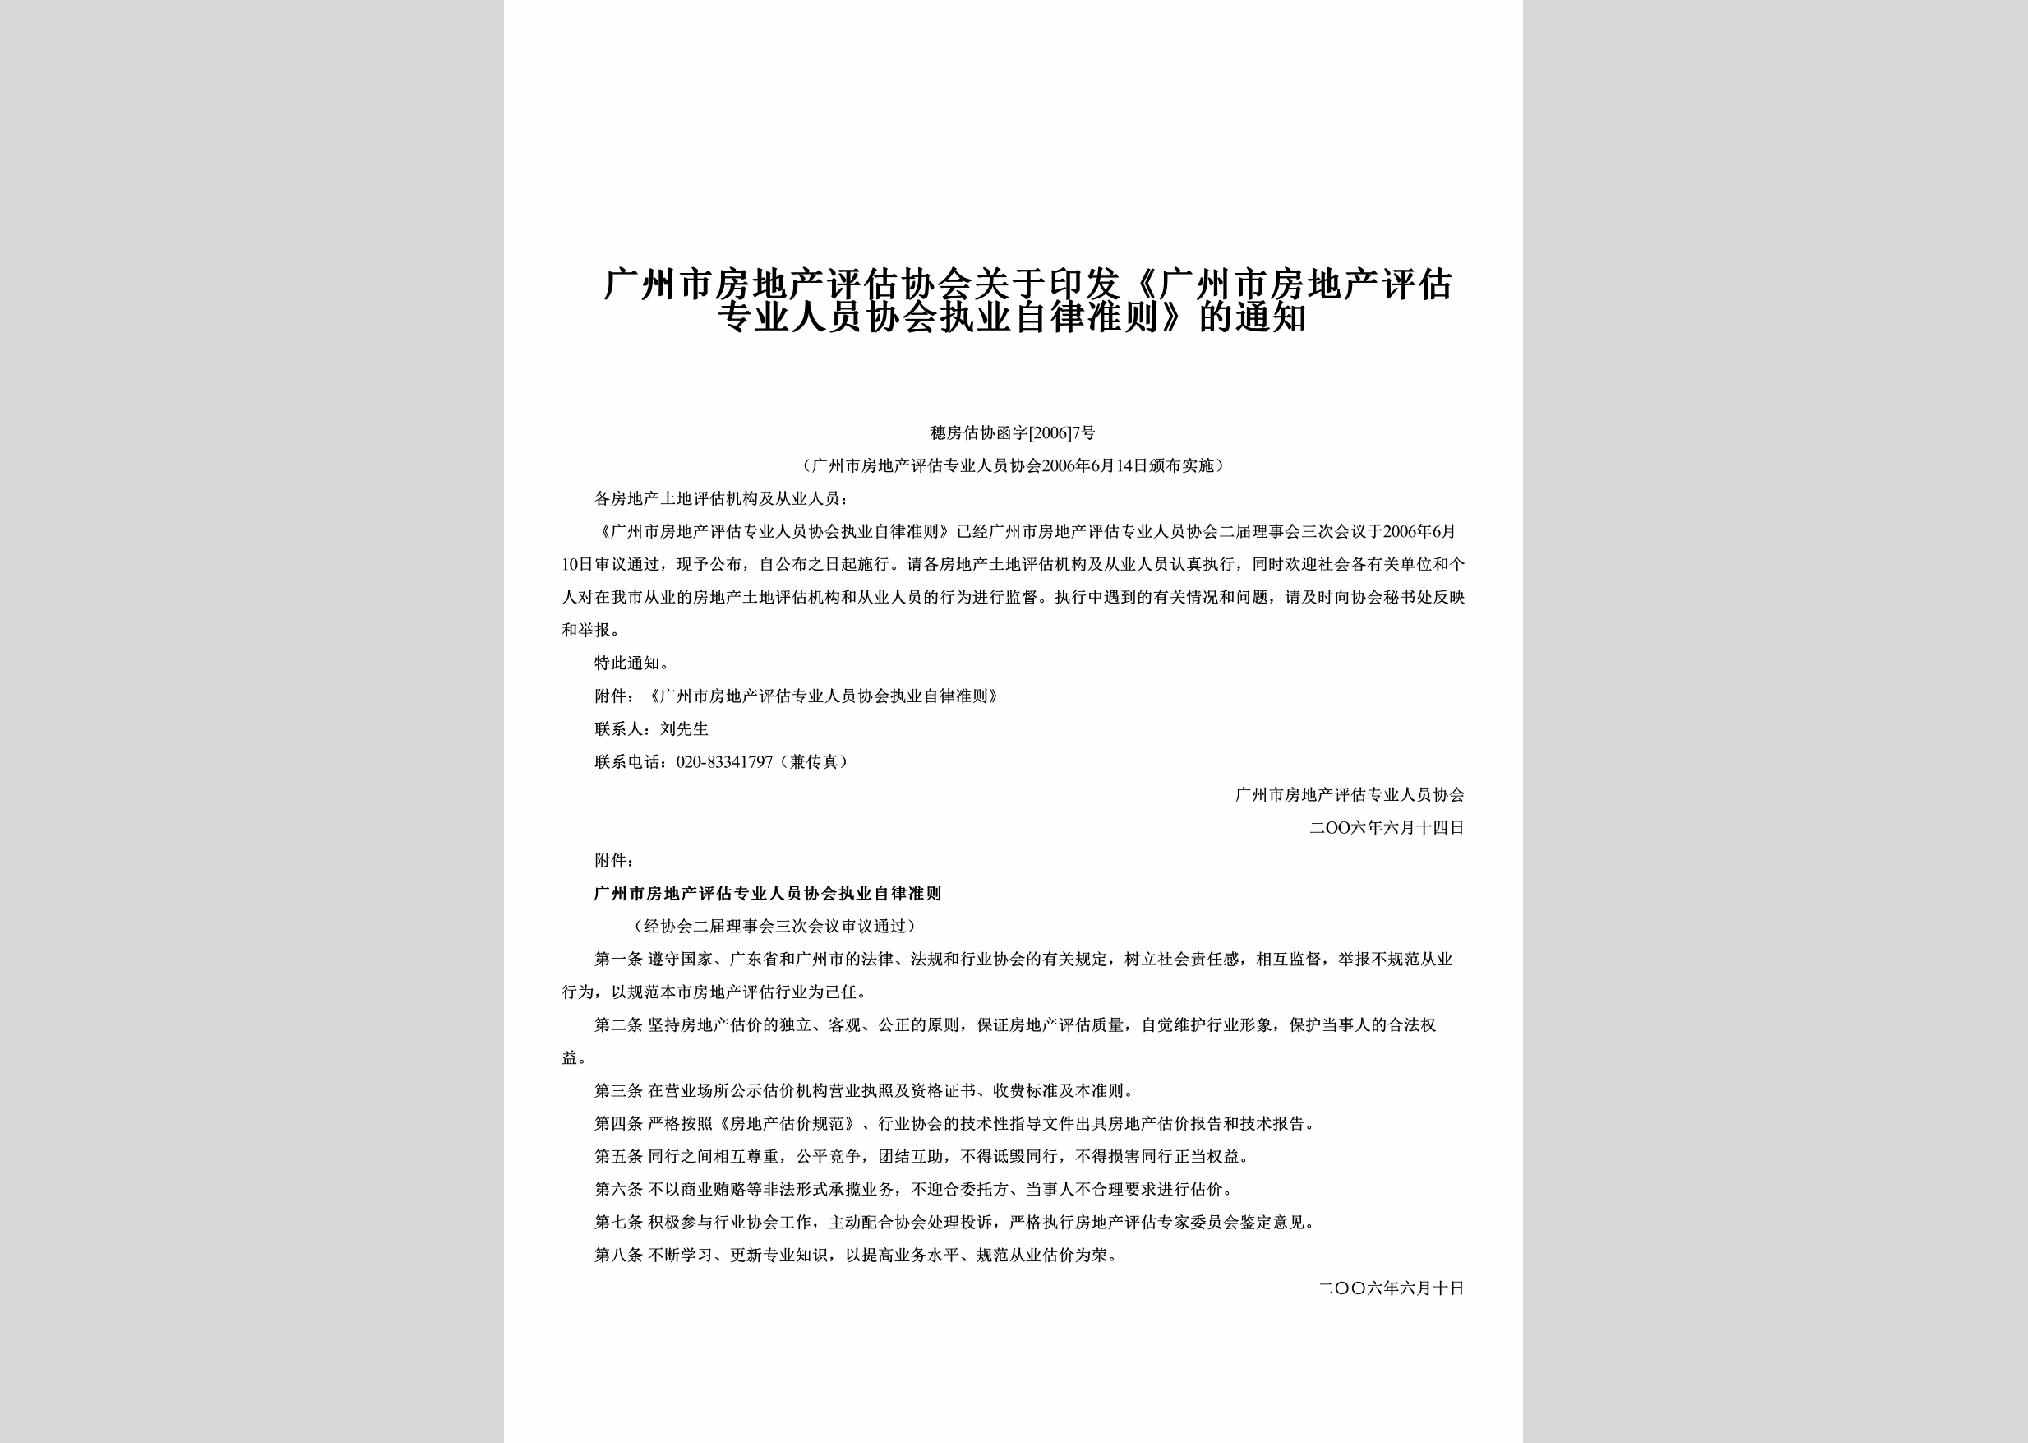 穗房估协函字[2006]7号：关于印发《广州市房地产评估专业人员协会执业自律准则》的通知